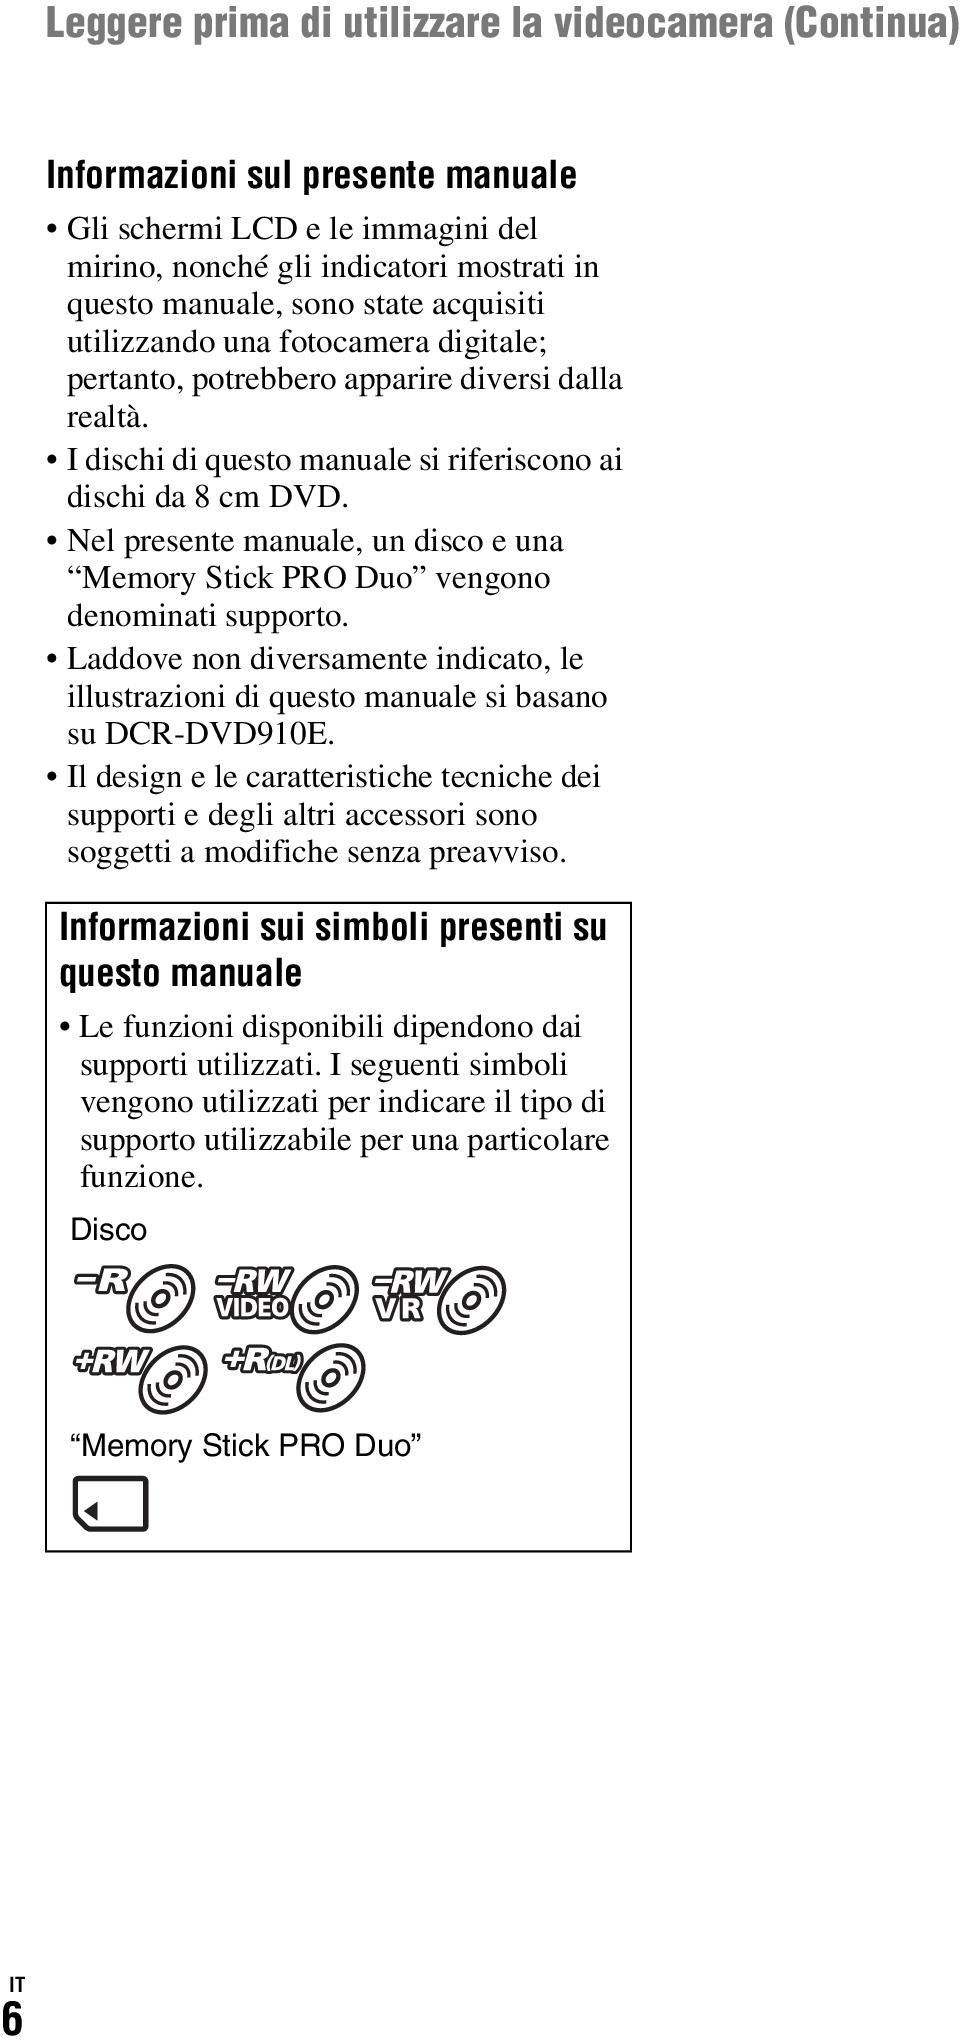 Nel presente manuale, un disco e una Memory Stick PRO Duo vengono denominati supporto. Laddove non diversamente indicato, le illustrazioni di questo manuale si basano su DCR-DVD910E.